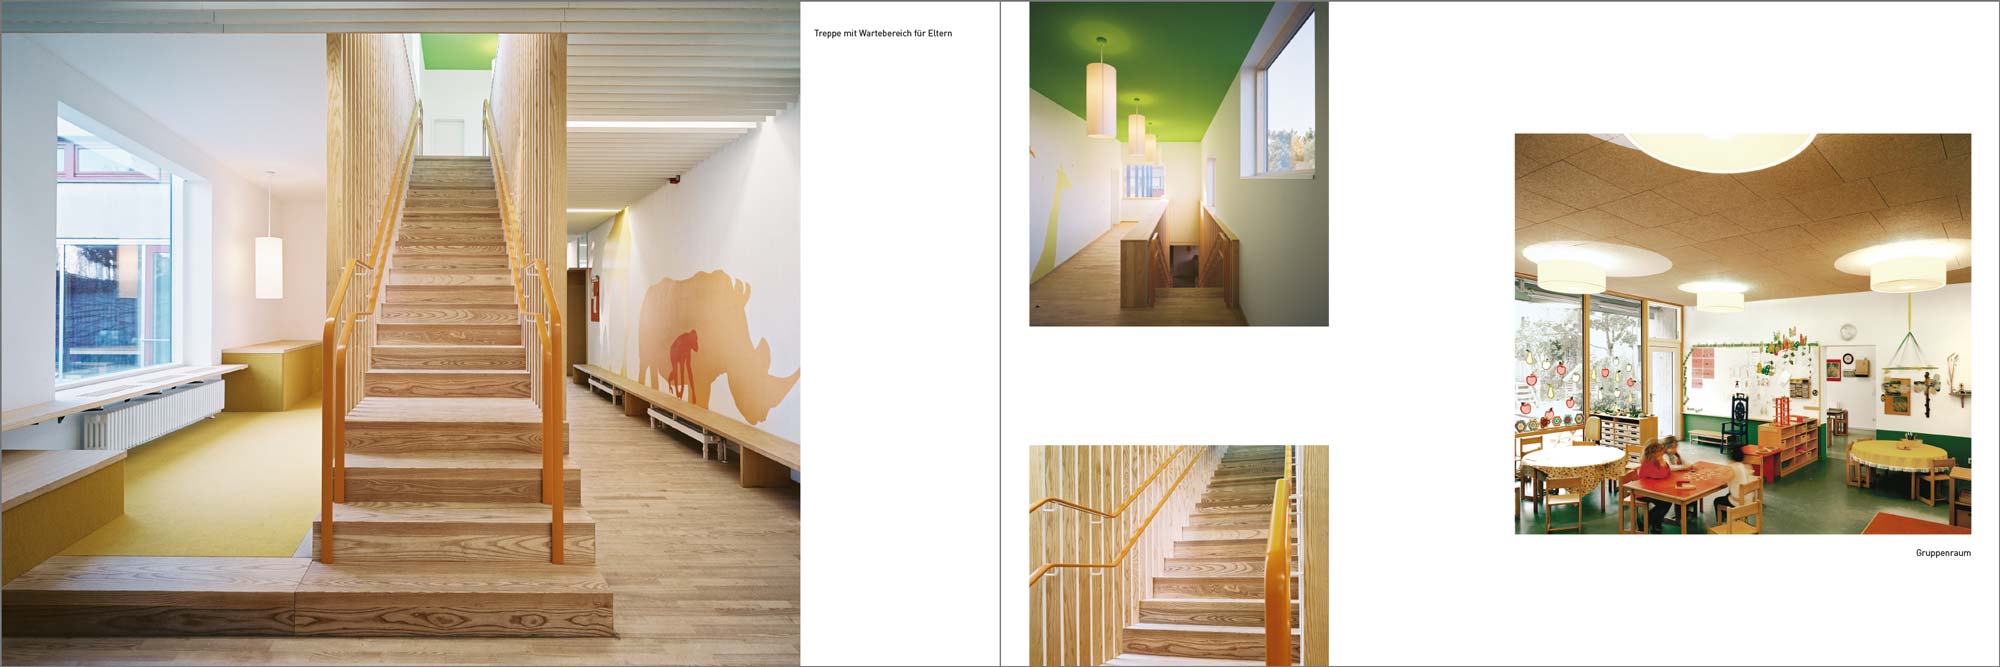 Gestaltung Imagebroschüre Architekten - Doppelseite Projektdarstellung - Kindergarten